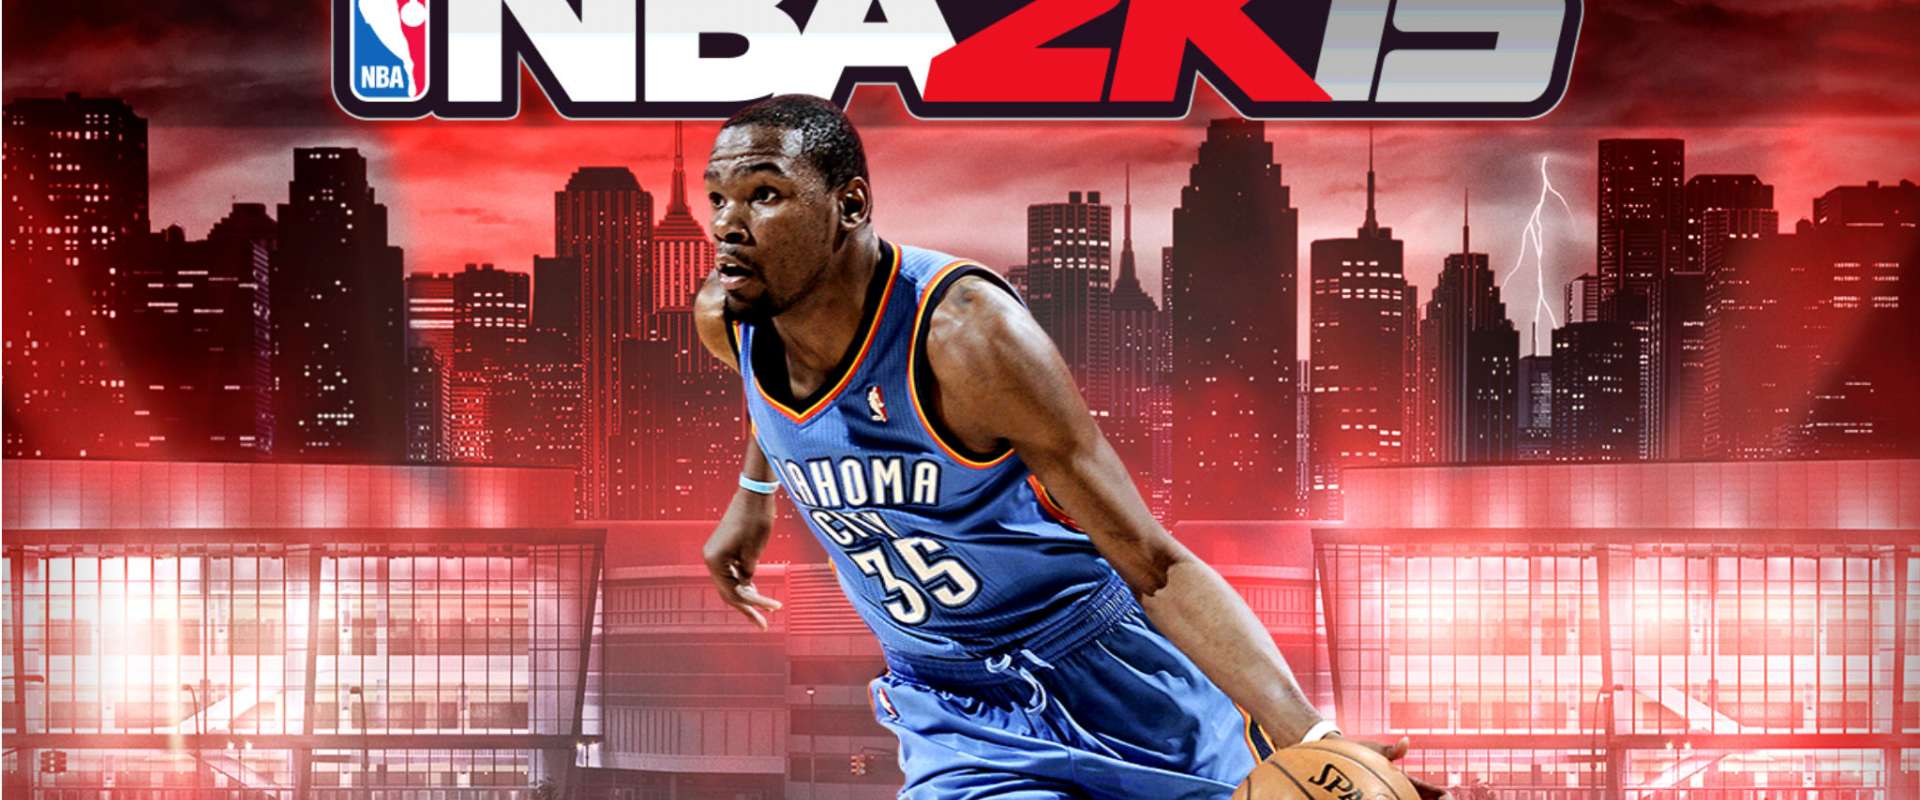 Amantes do basquete já podem baixar o jogo NBA 2K16 no Android ou iOS 